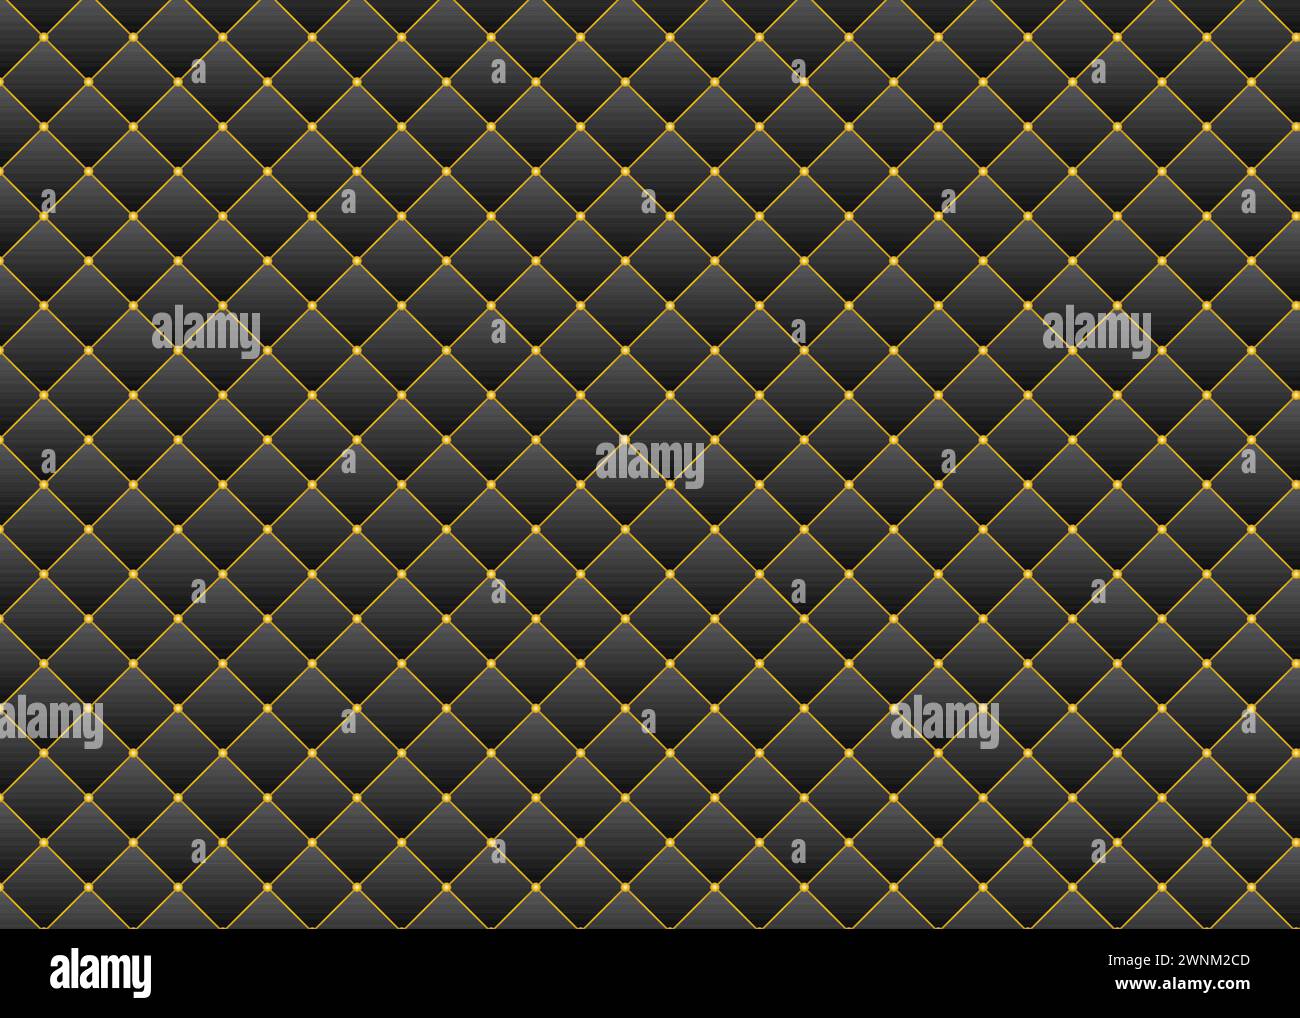 Nahtloses Muster von Rauten mit goldenen Knöpfen und Rand. Luxuriöser 3D-Hintergrund mit dunkler Upoholsterie-Lederstruktur. Stock Vektor